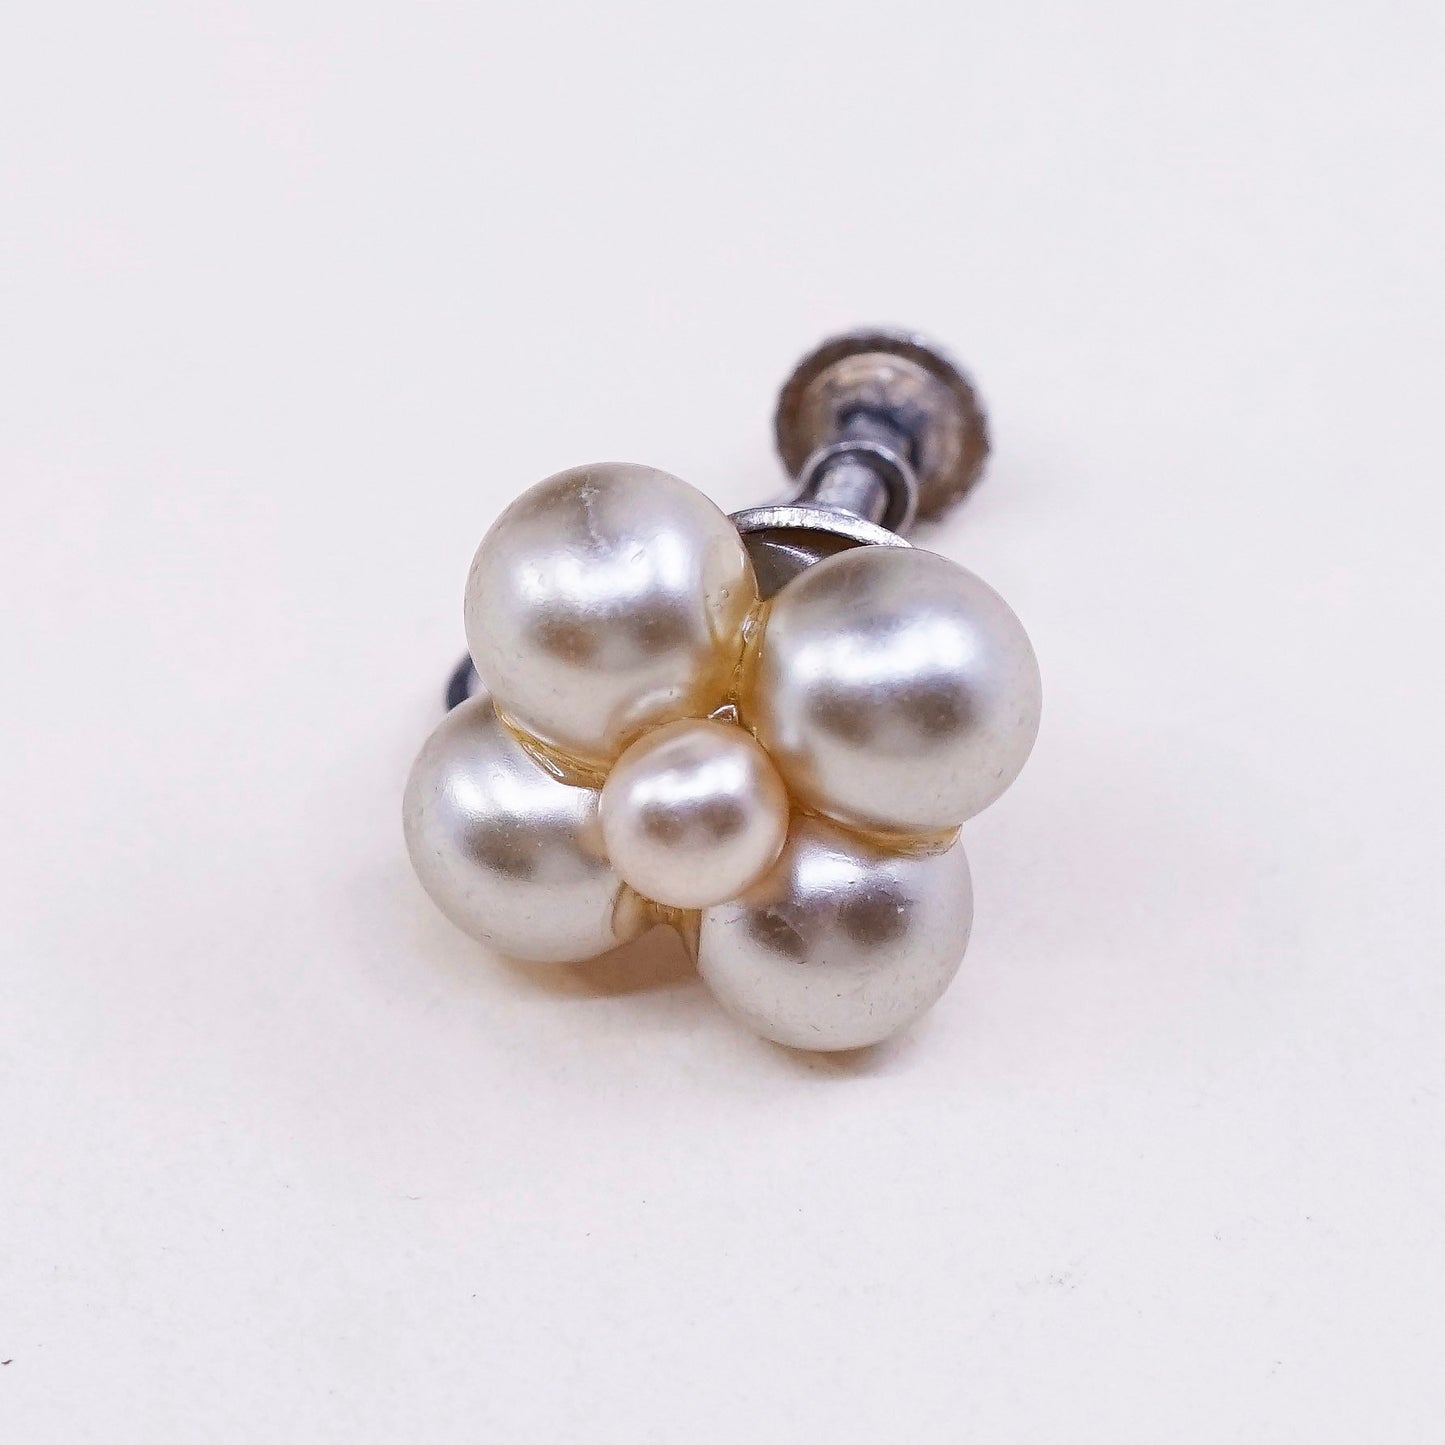 Vintage sterling silver handmade earrings, 925 screw back with pearl